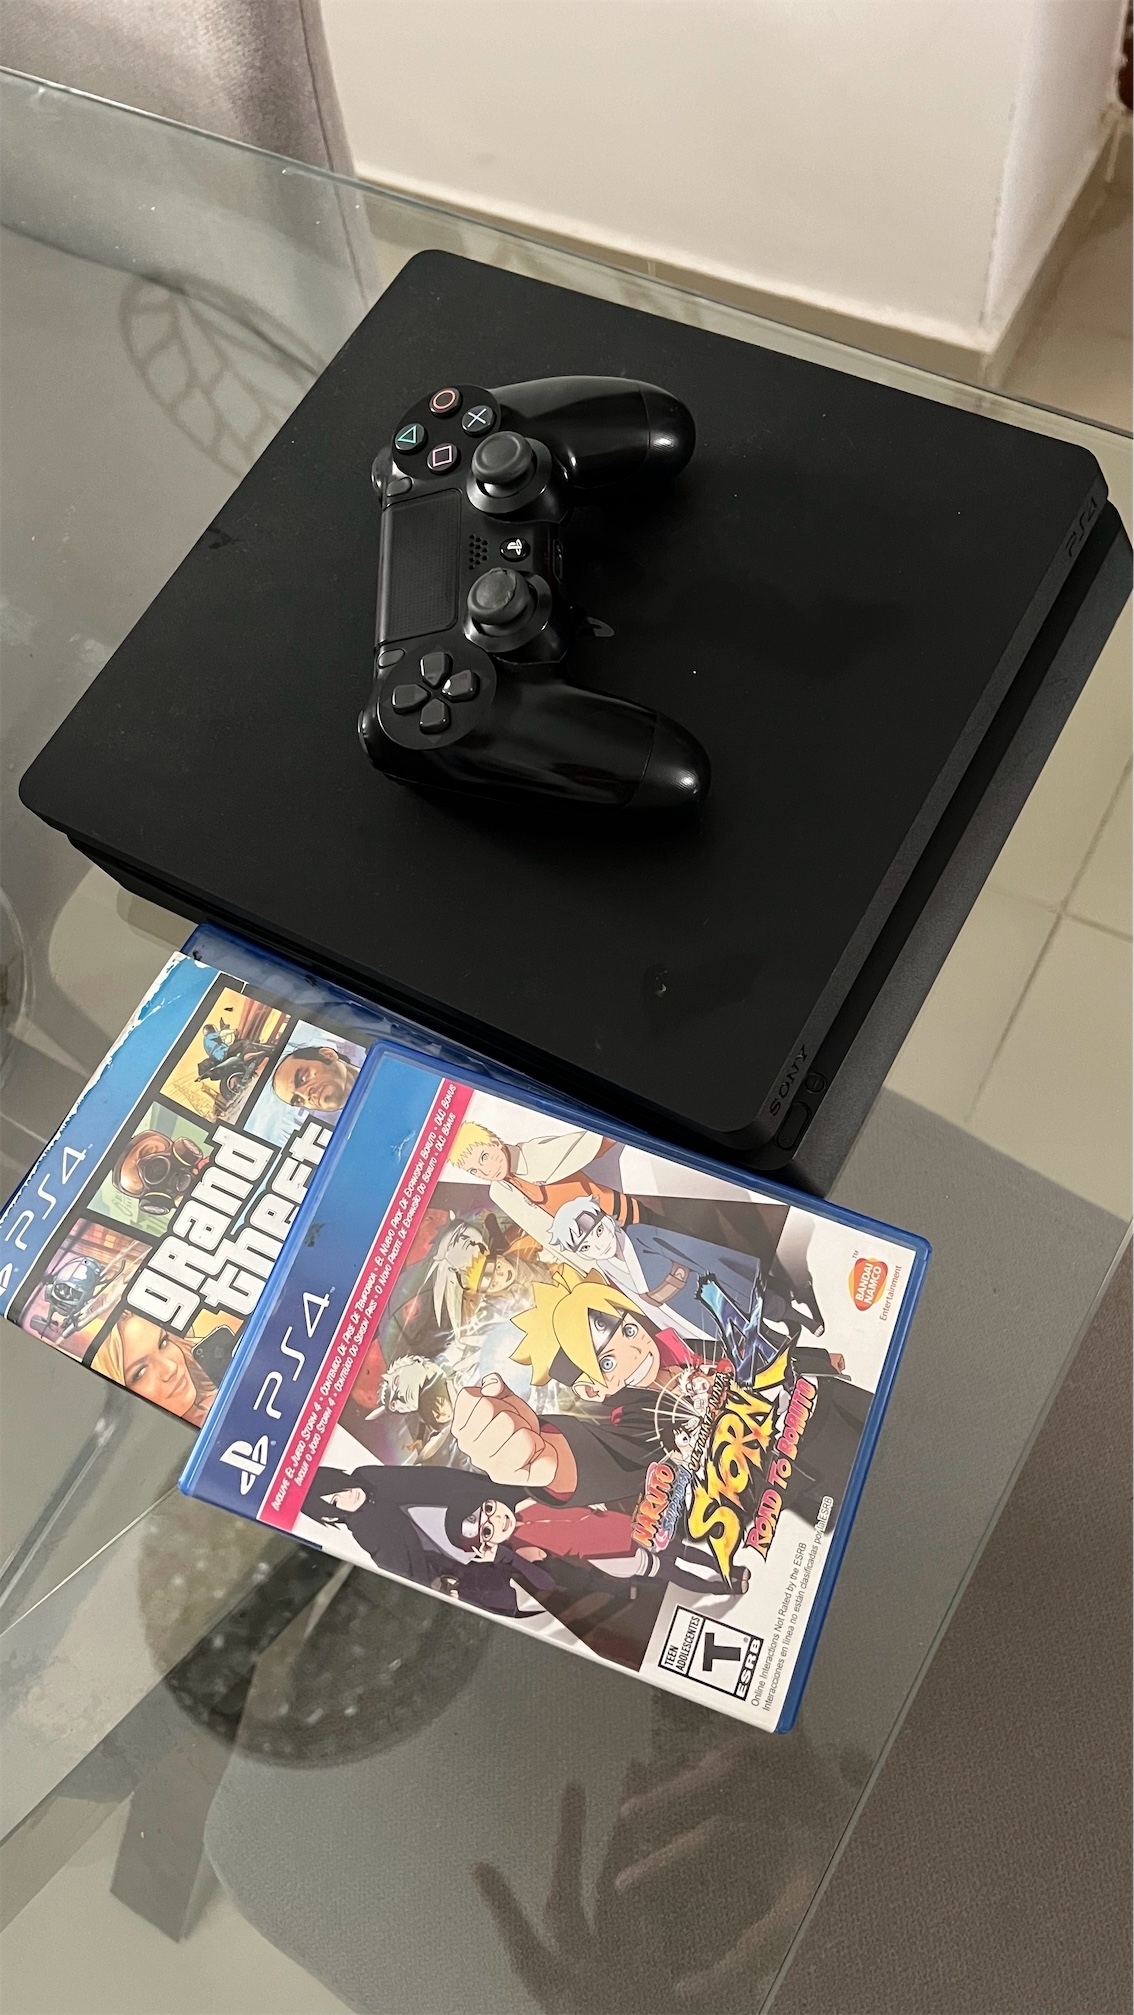 consolas y videojuegos - PS4 SLIM 500gb 2